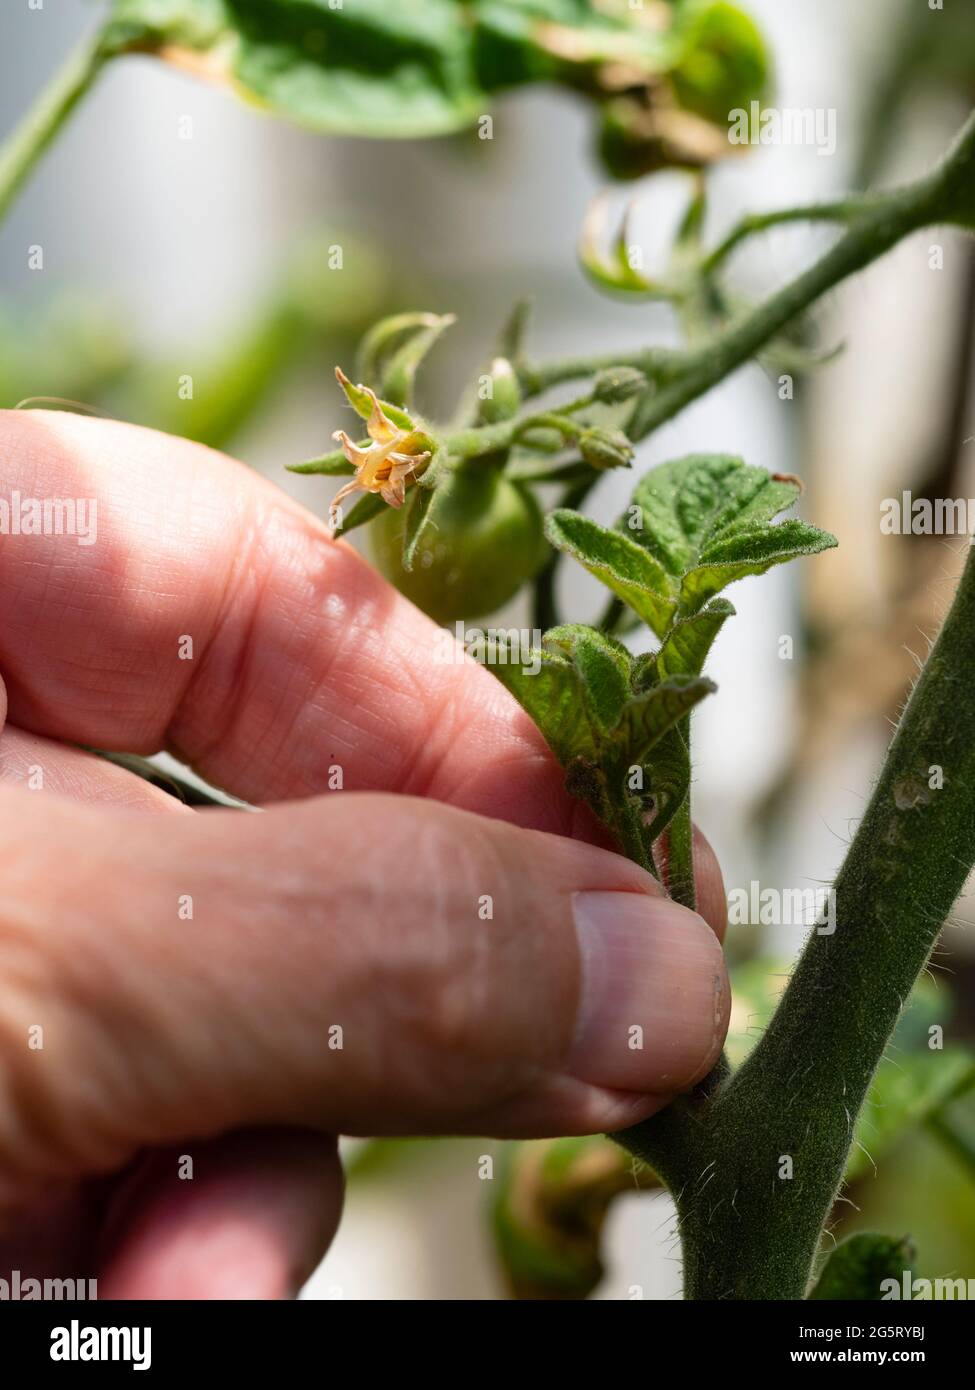 Préparation de l'élimination de la pousse latérale de la tomate en cordon indéterminée Solanum lycopersicum 'Outdoor Girl' Banque D'Images